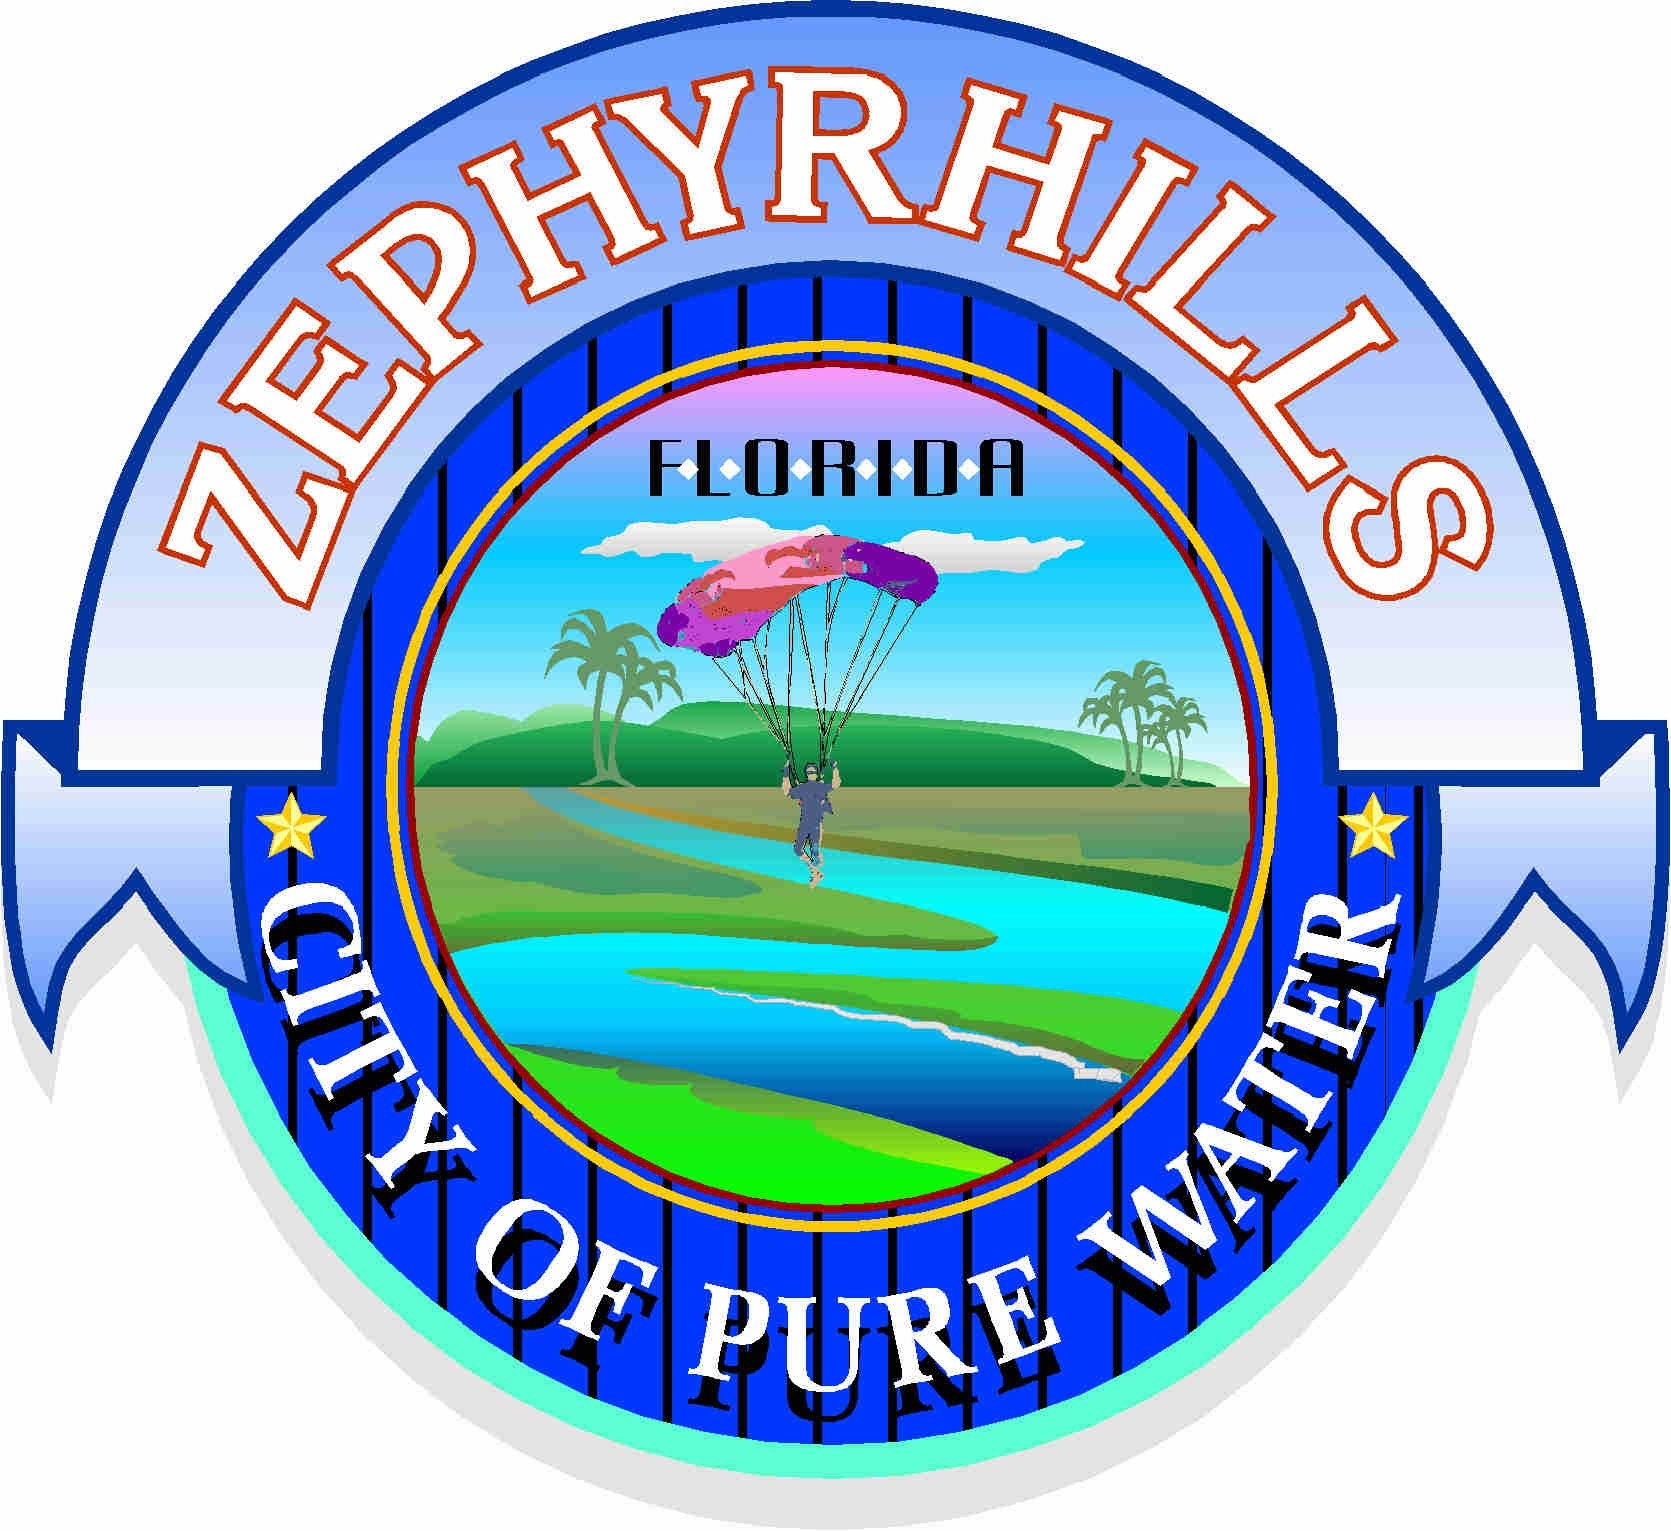 Organization logo of City of Zephyrhills